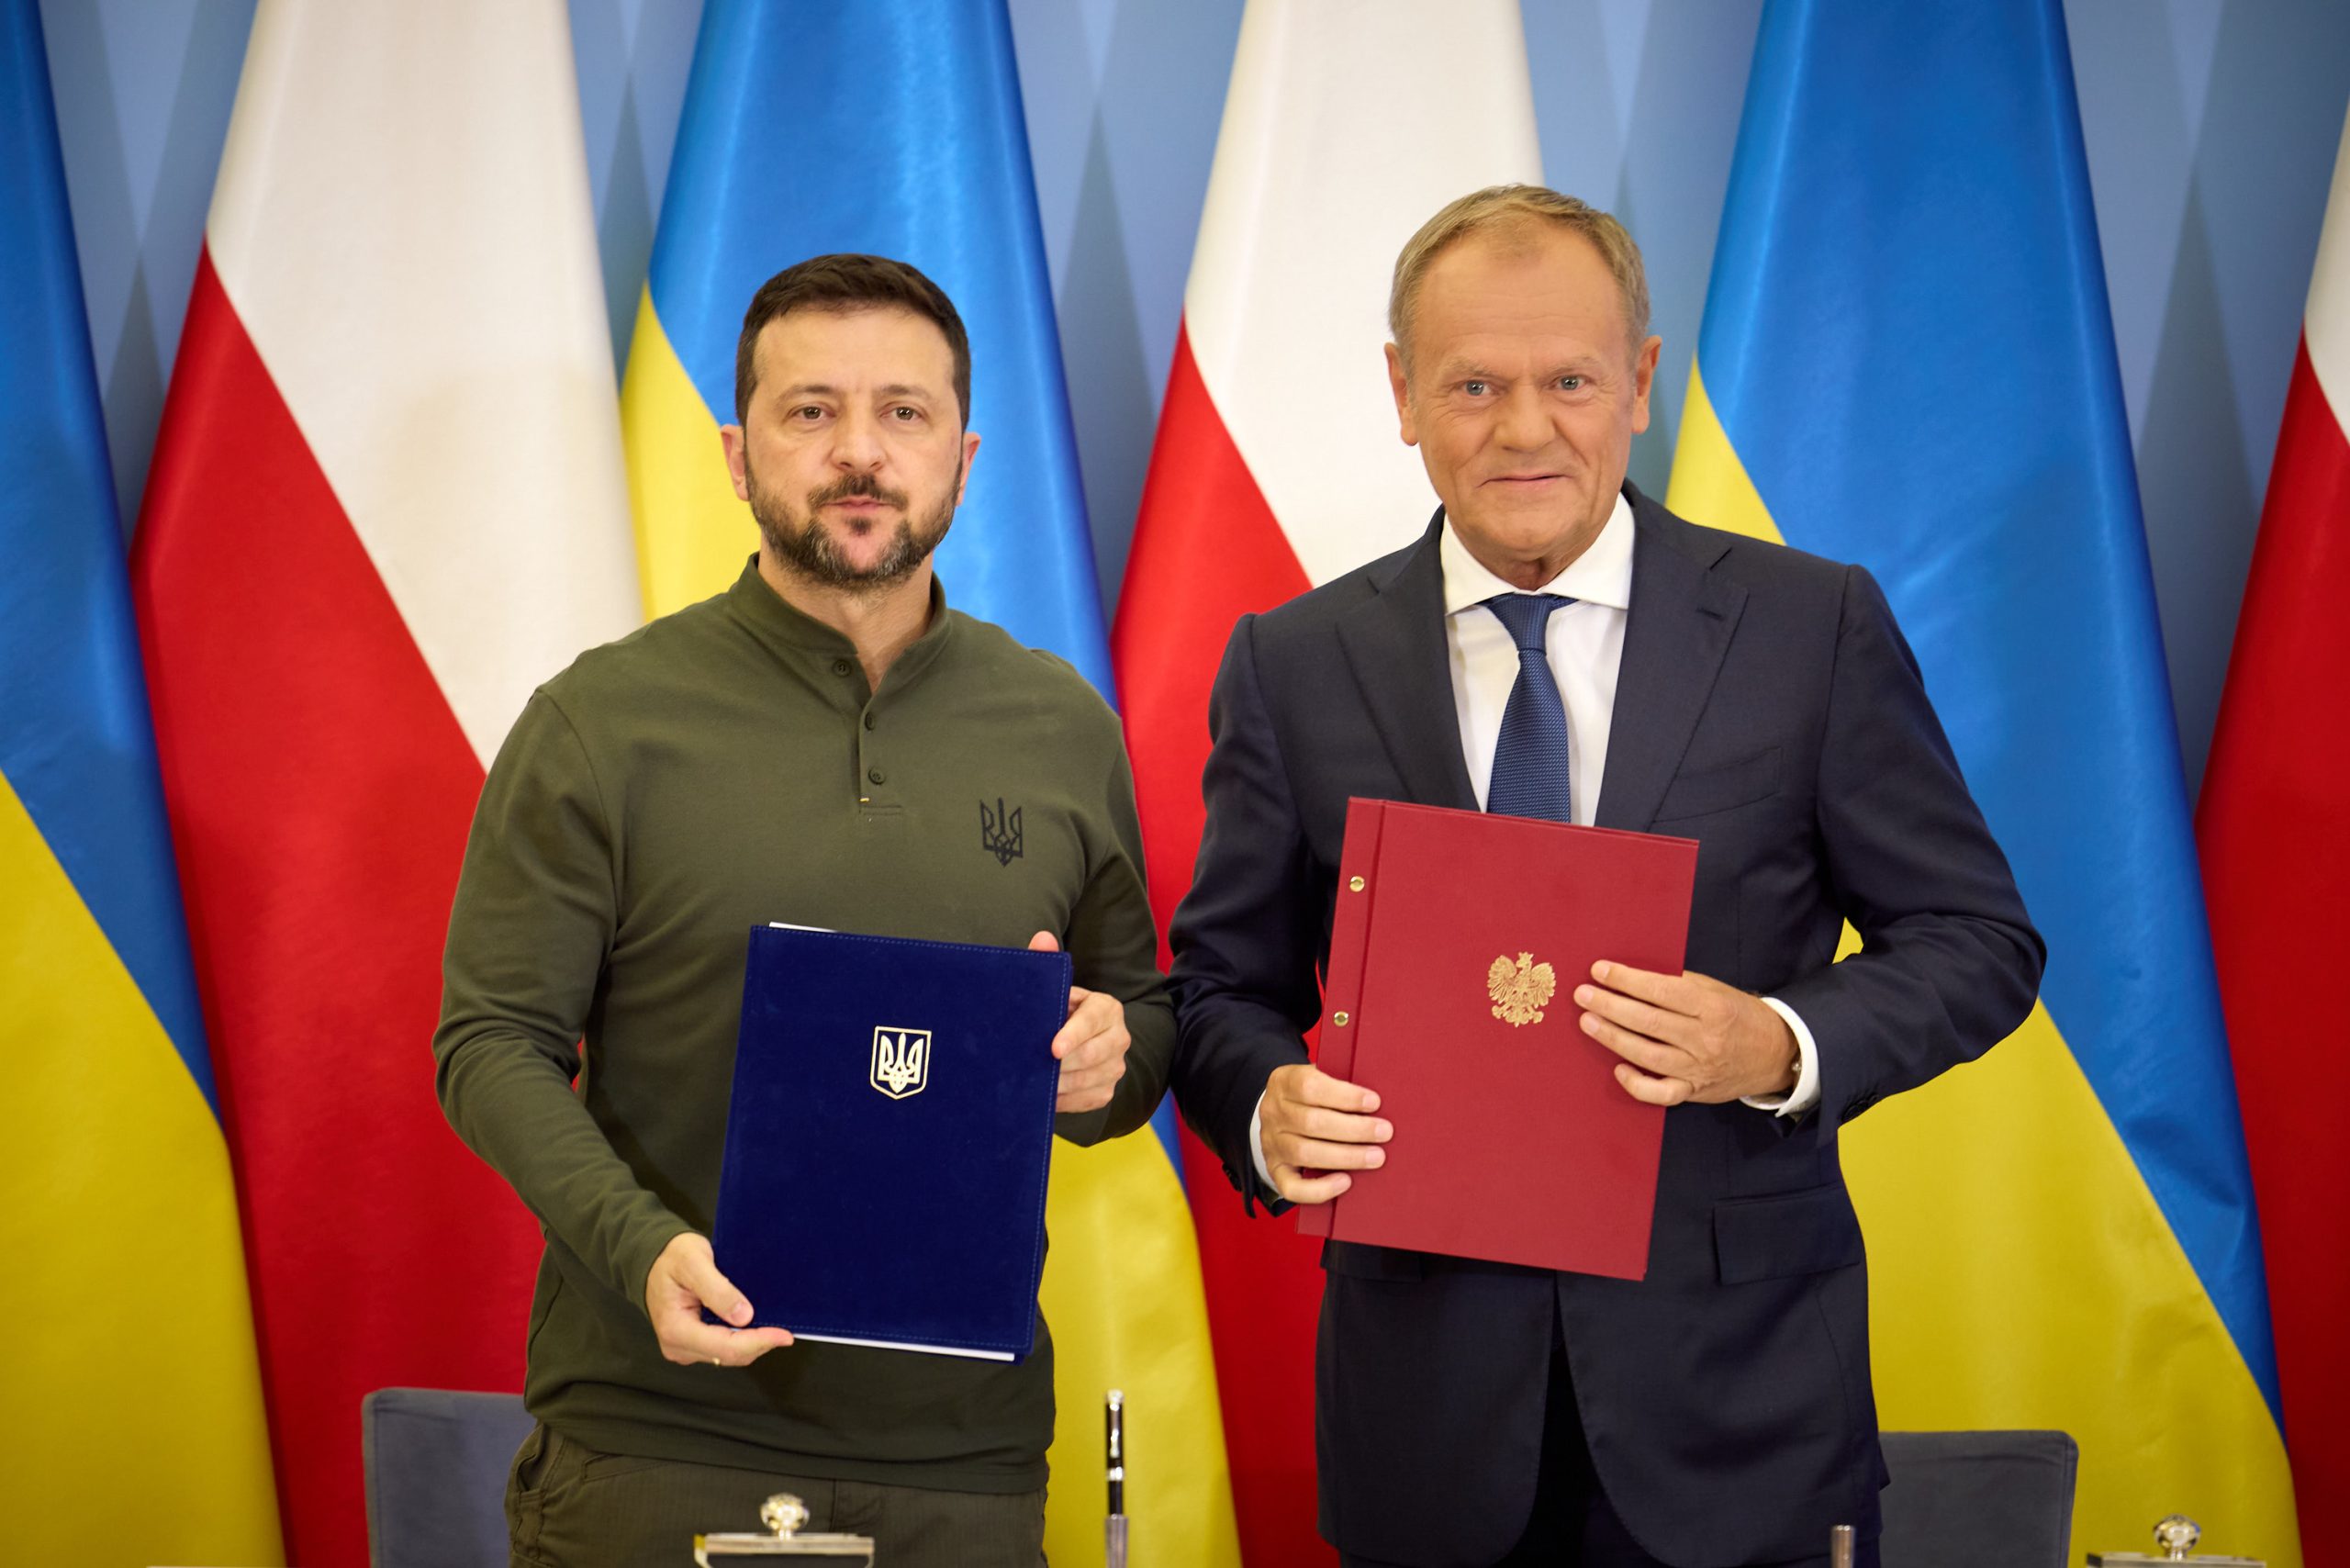 Ukraina i Polska podpisały porozumienie o współpracy w dziedzinie bezpieczeństwa